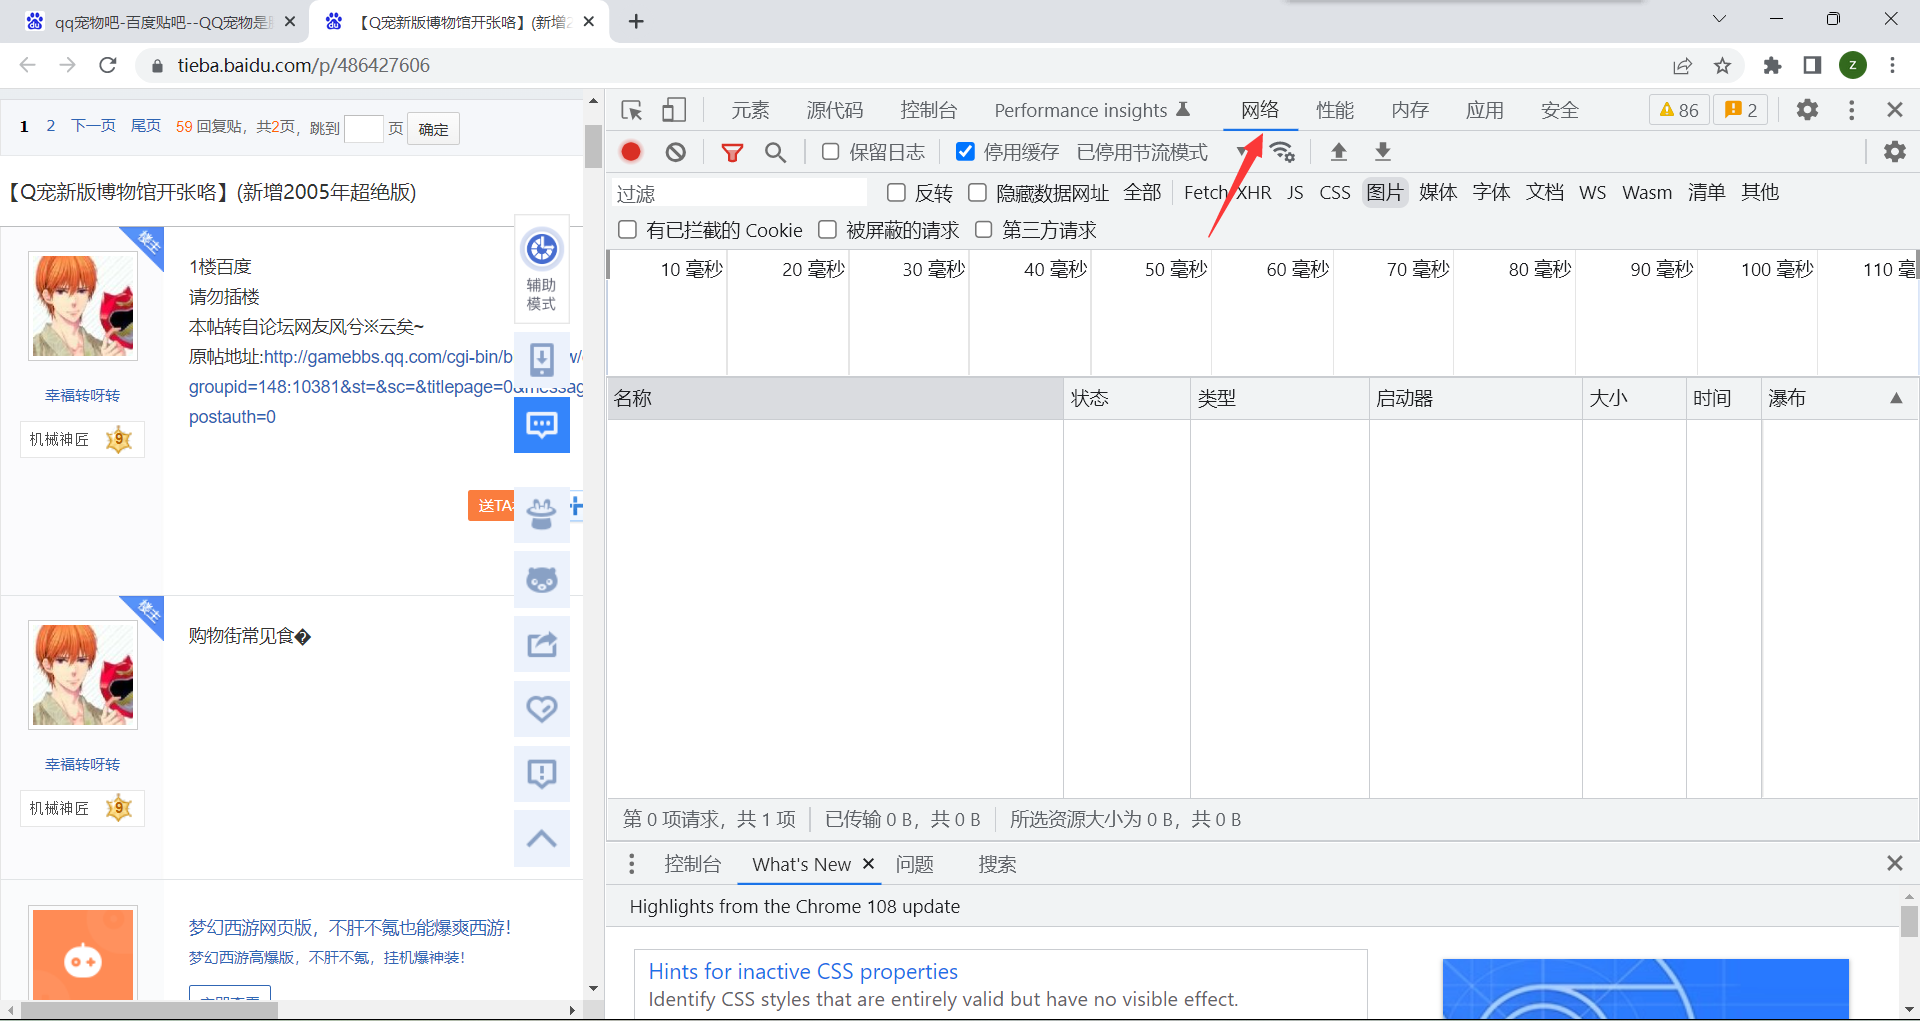 Android不规则图片点击事件响应-中国地图_android 图片重叠点击事件-CSDN博客